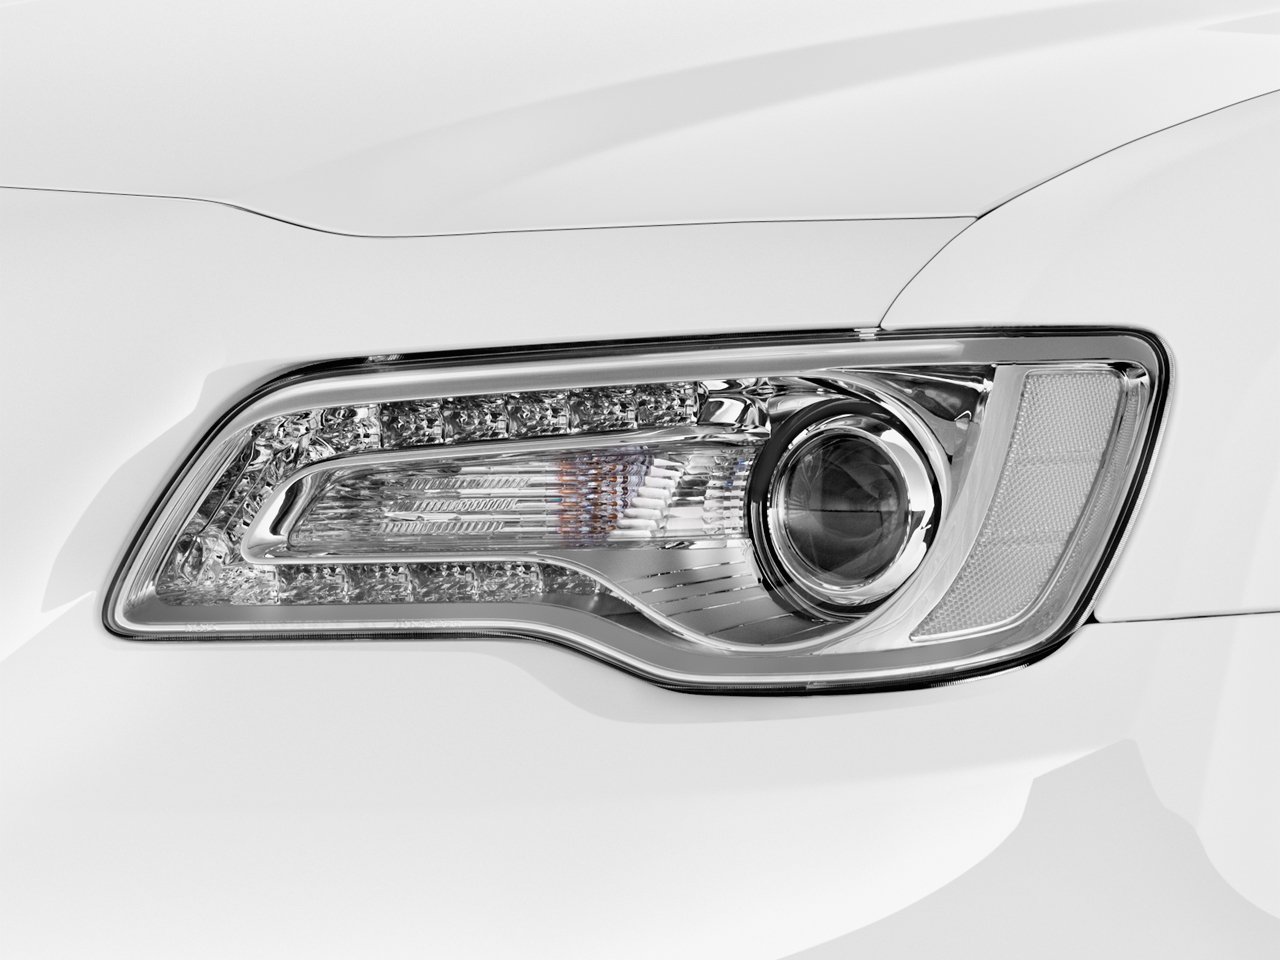 Chrysler 300 exterior - Headlight